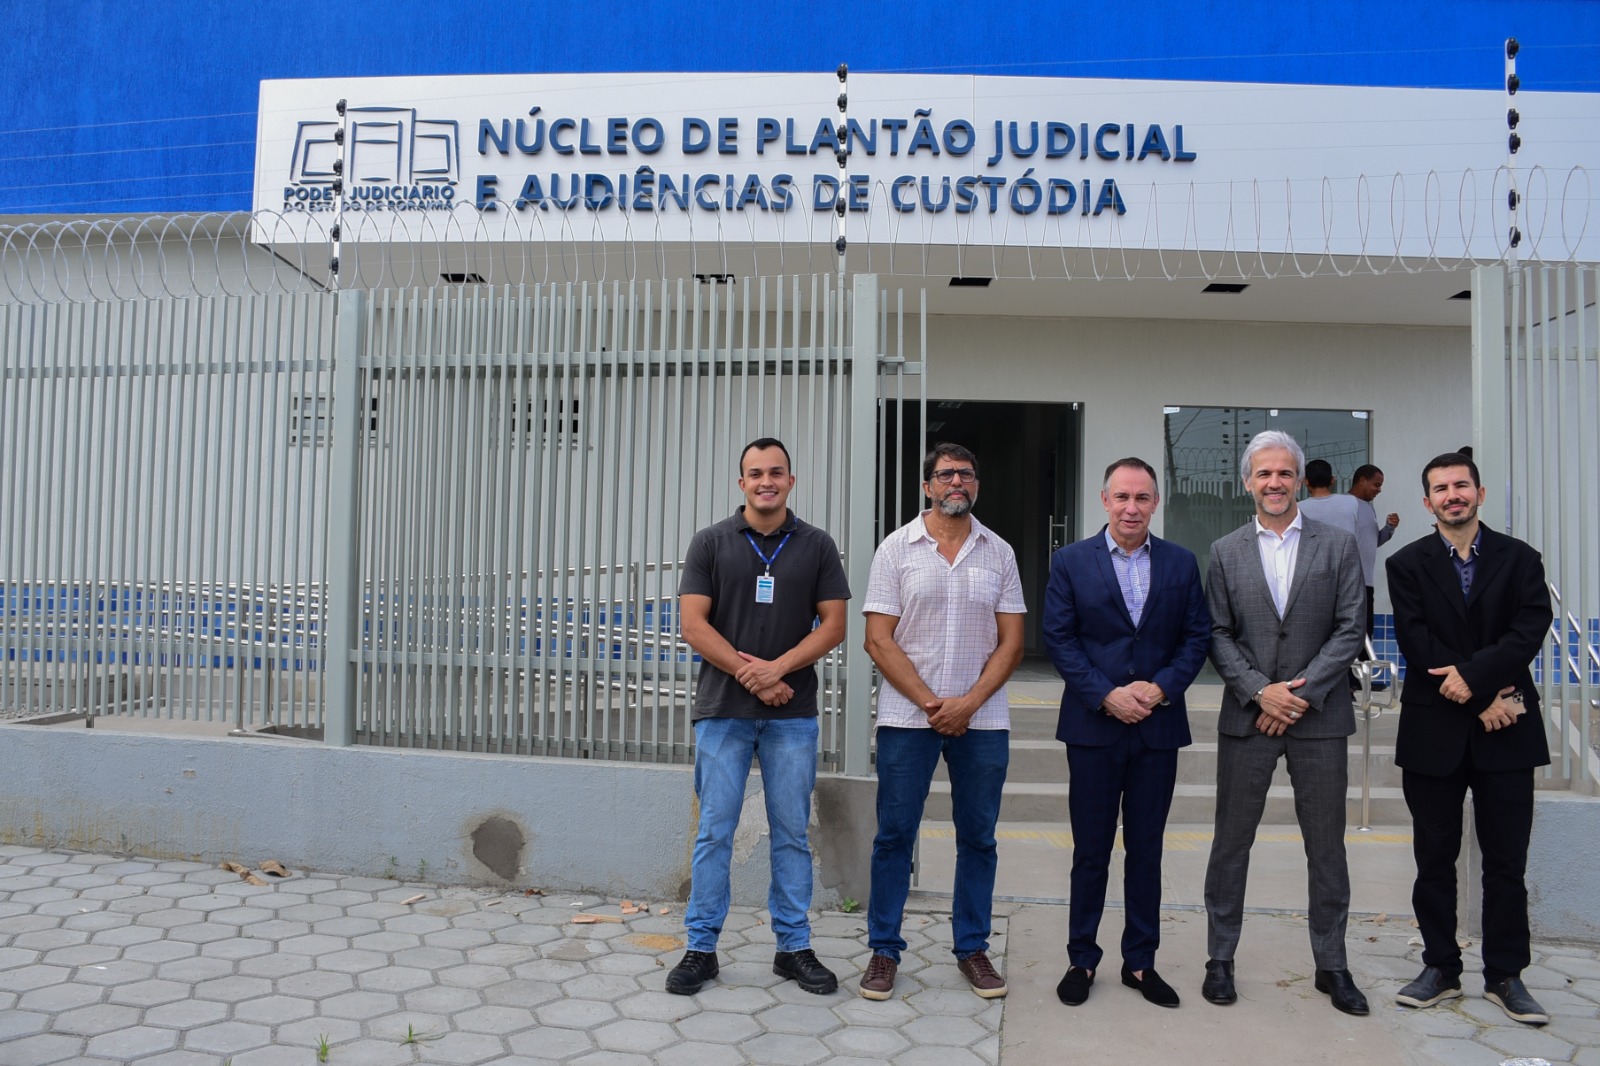 Cinco homens posicionados em frente ao Núcleo de Plantão Judicial e Audiências de Custódia (Nupac)